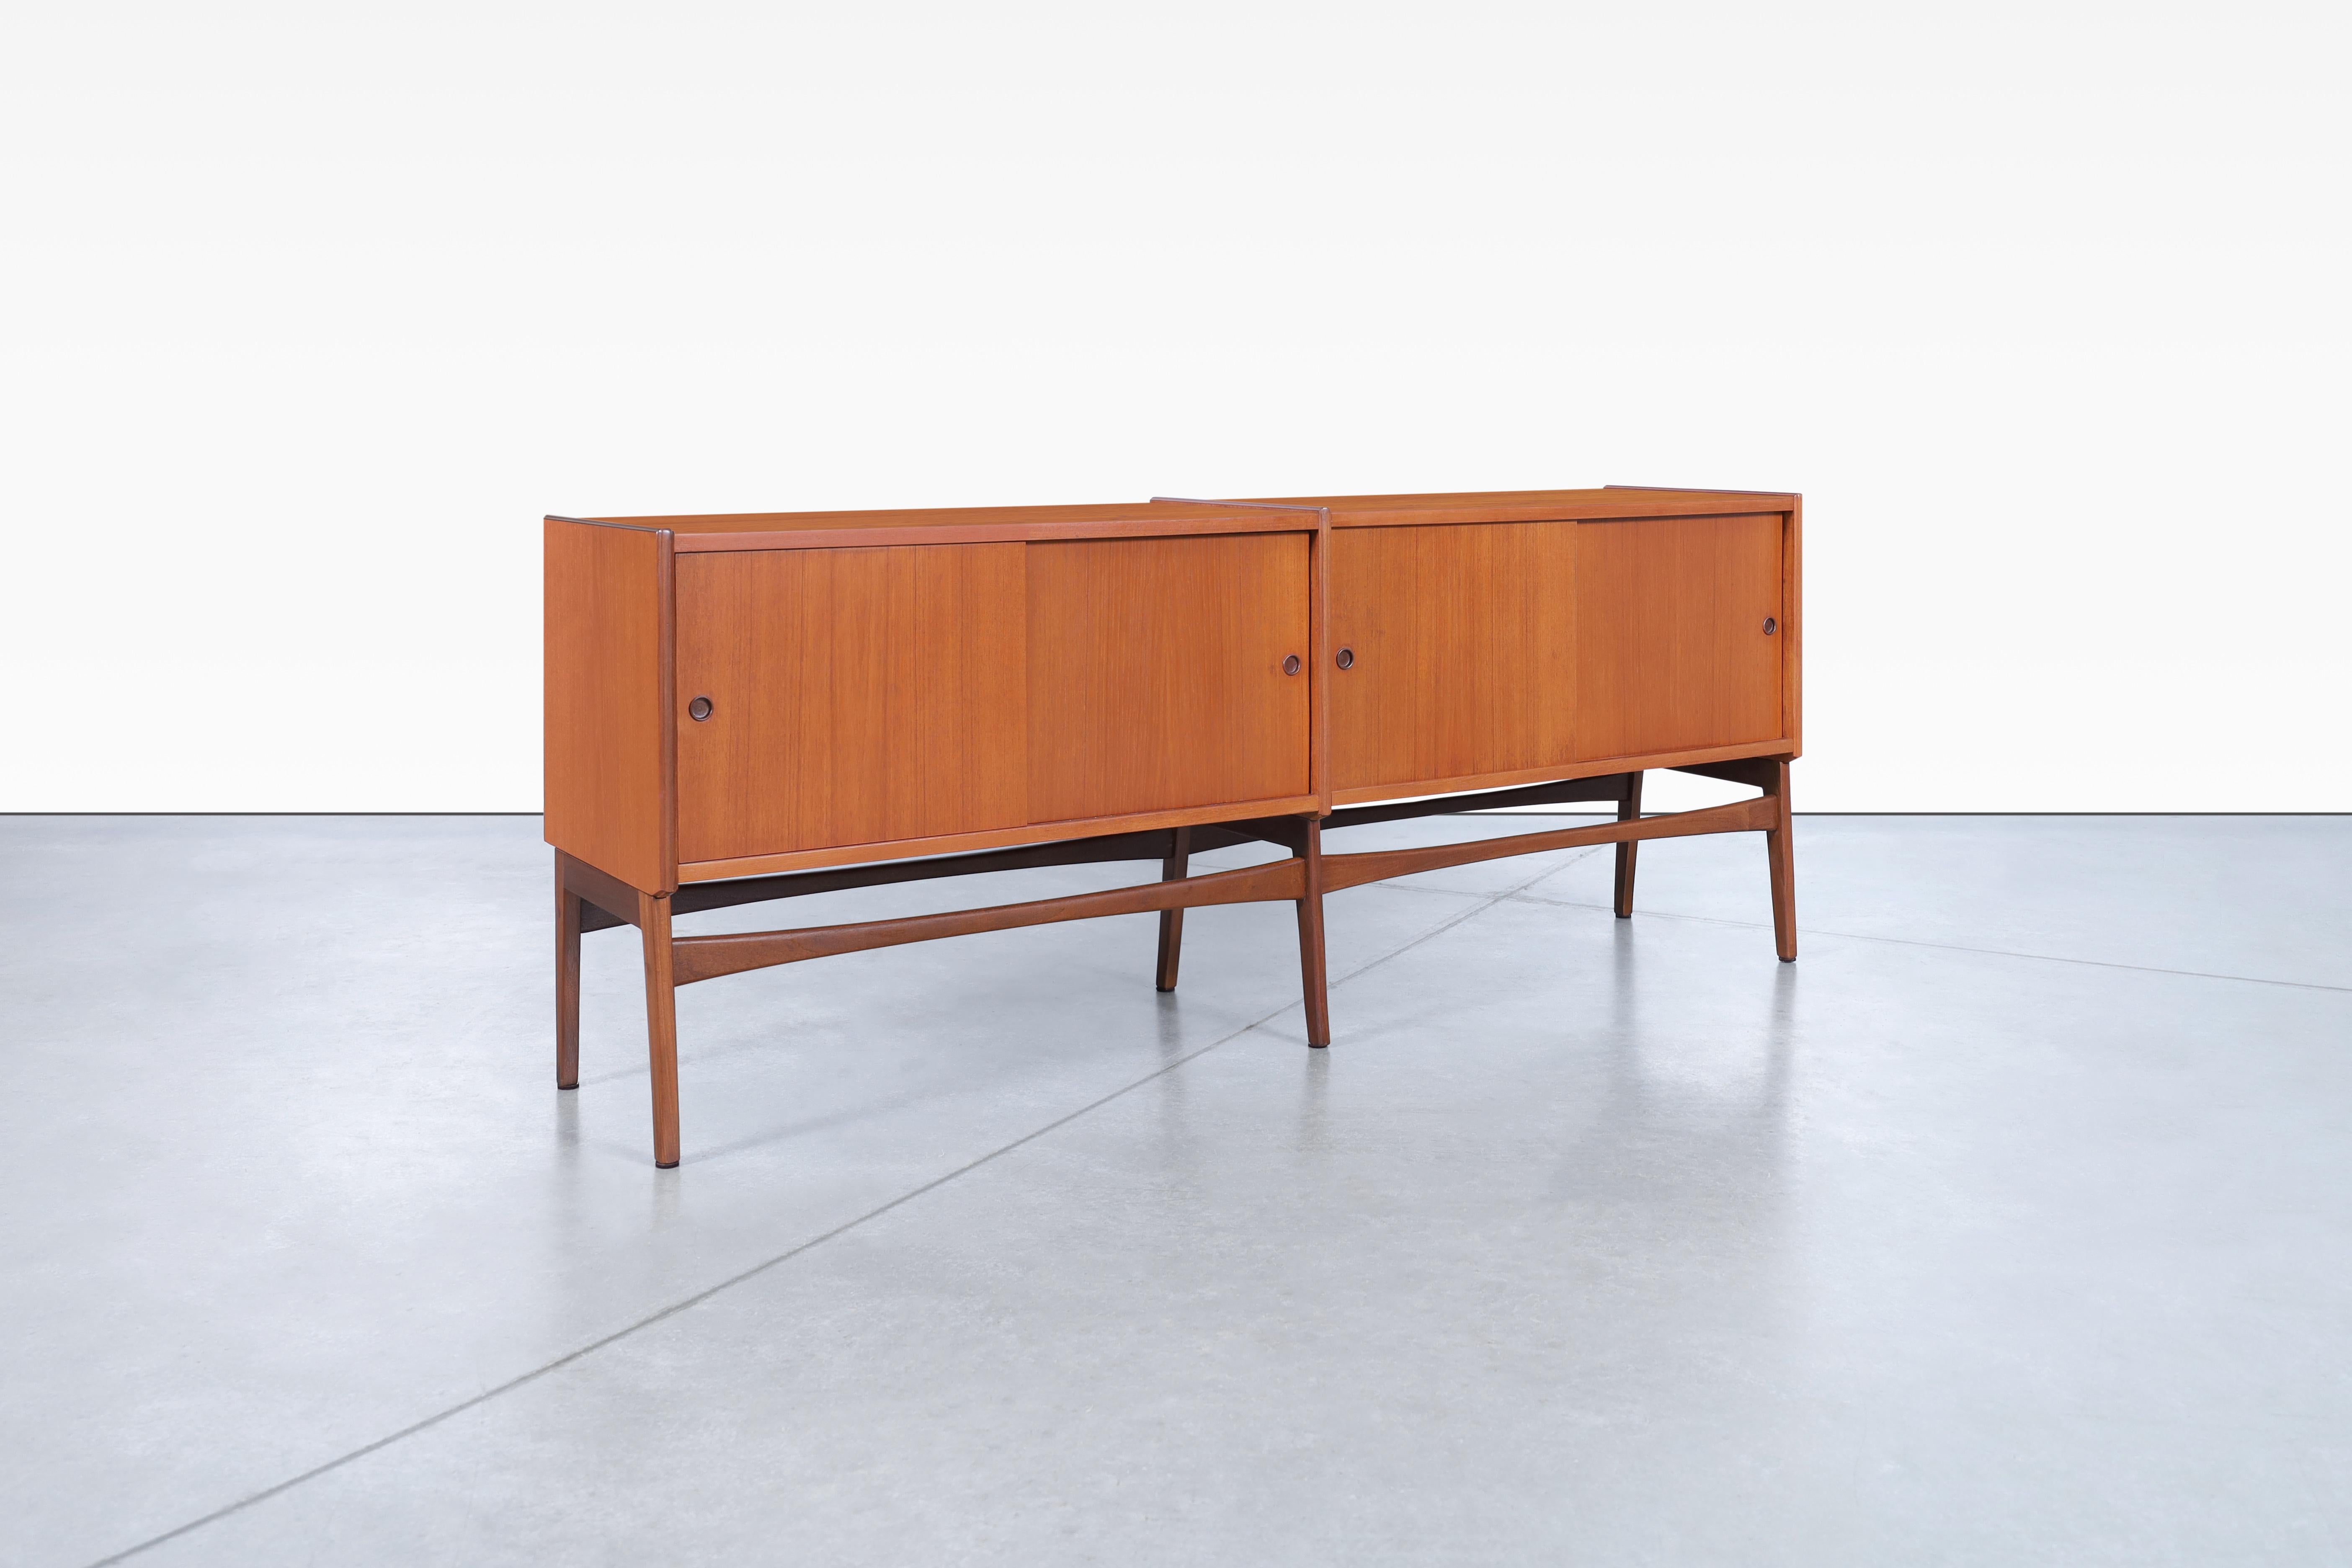 Moderne dänische Teakholz-Credenza, entworfen in Dänemark, ca. 1960er Jahre. Dieses wunderschöne, neu lackierte Möbelstück bietet vier Schiebetüren, die mühelos Ihr Hab und Gut verbergen und gleichzeitig ein elegantes Designelement in Ihren Raum